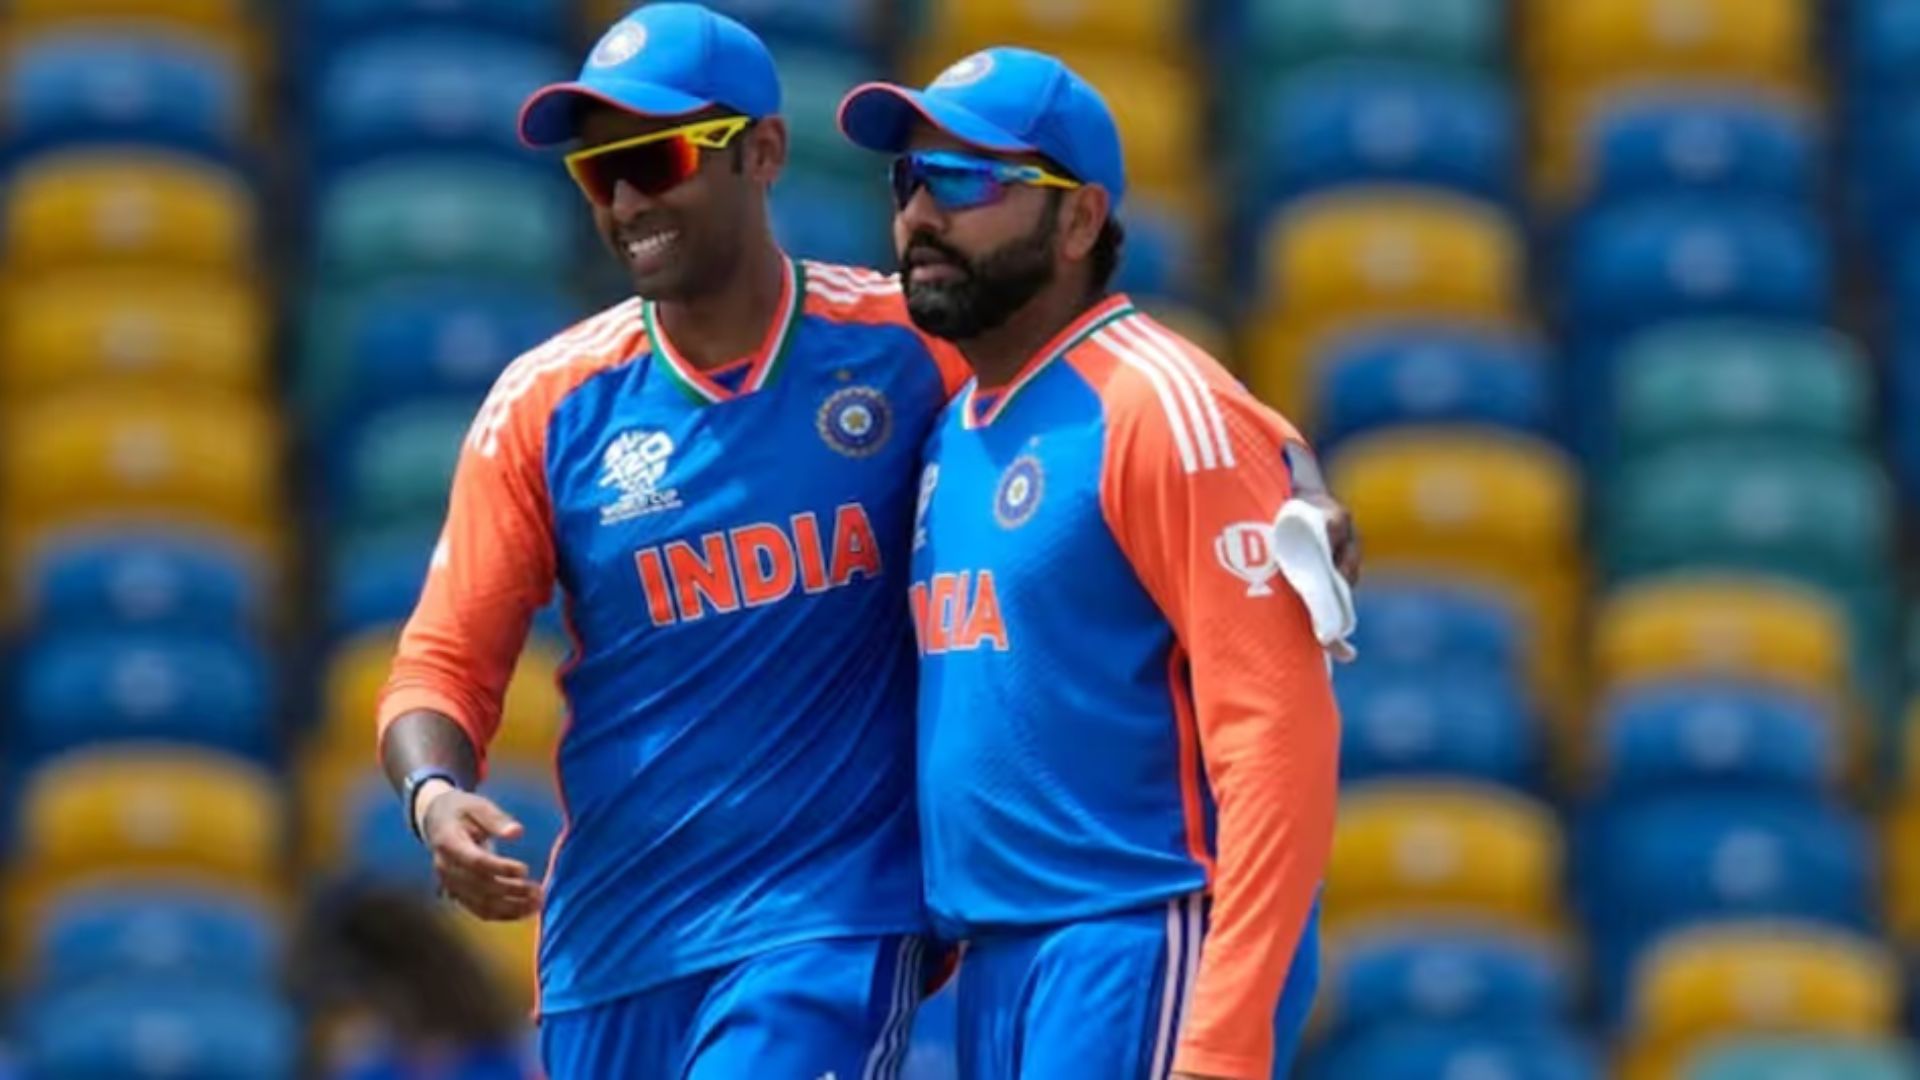 IND vs SL: श्रीलंका दौरे के लिए टीम घोषित, सूर्या को टी 20 की कप्तानी, वनडे में 2 युवा चेहरों को मौका